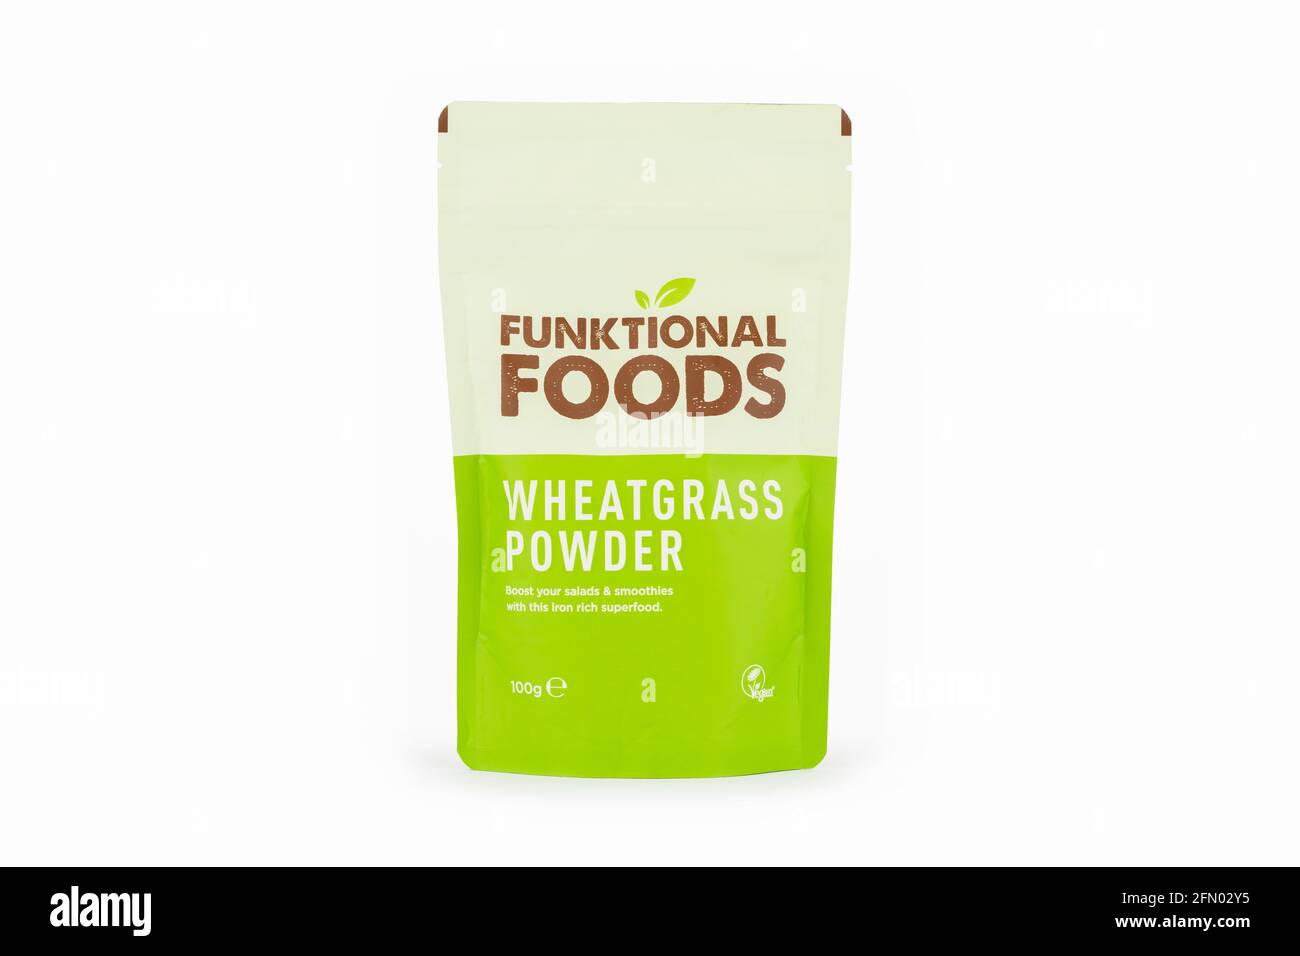 Un pacchetto di polvere di erba di wheatgrass Funktional Foods sparato su uno sfondo bianco. Foto Stock